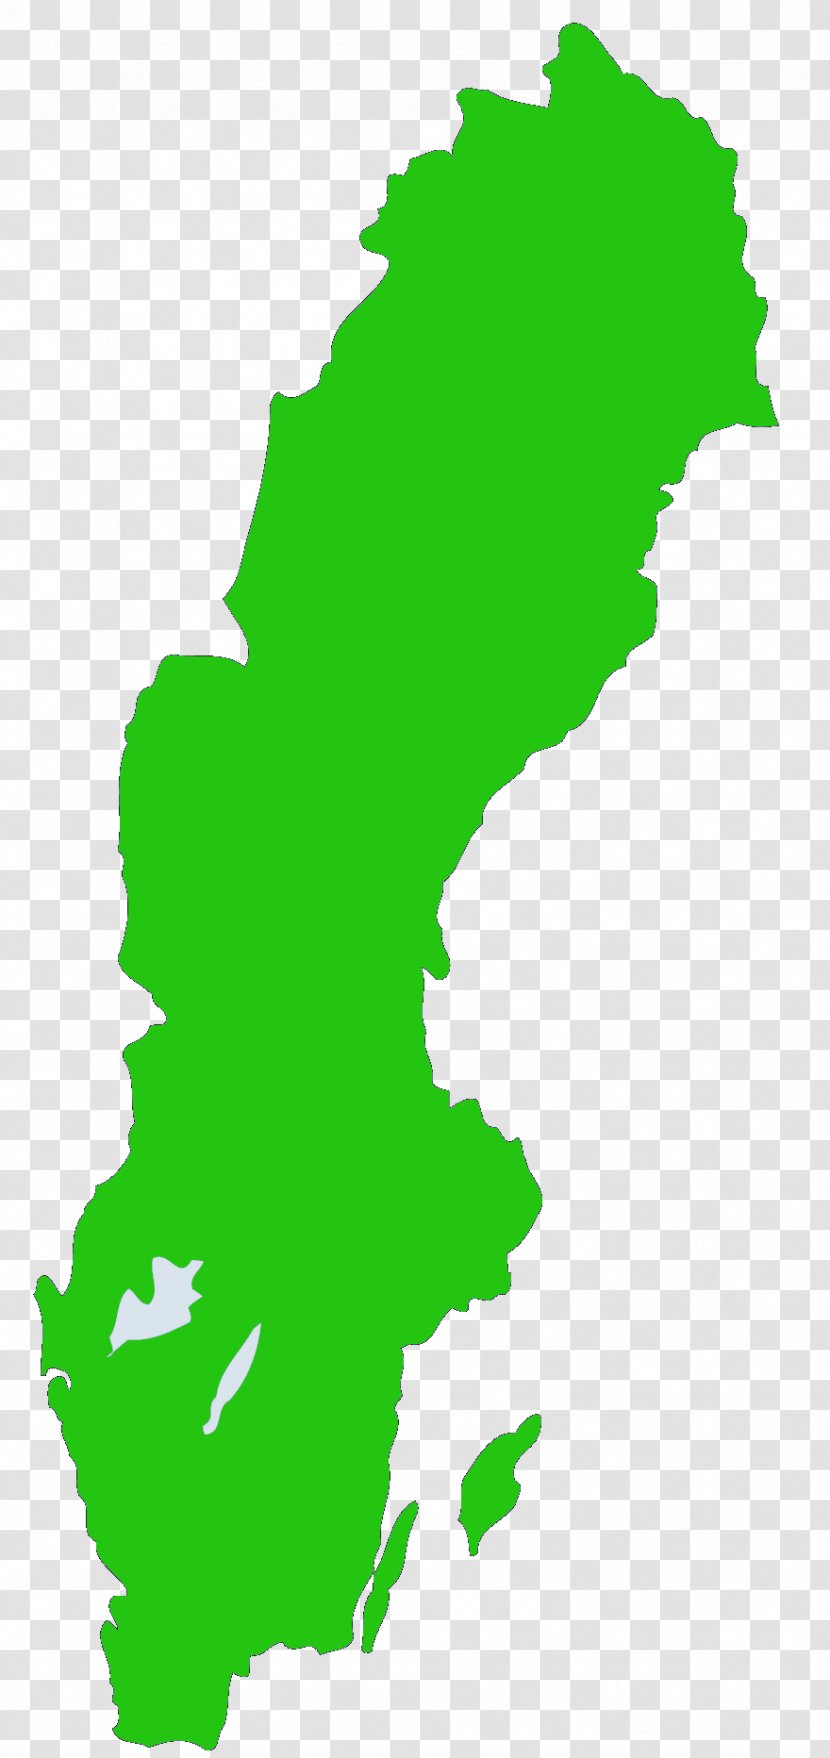 Sweden Map Clip Art - Royaltyfree Transparent PNG